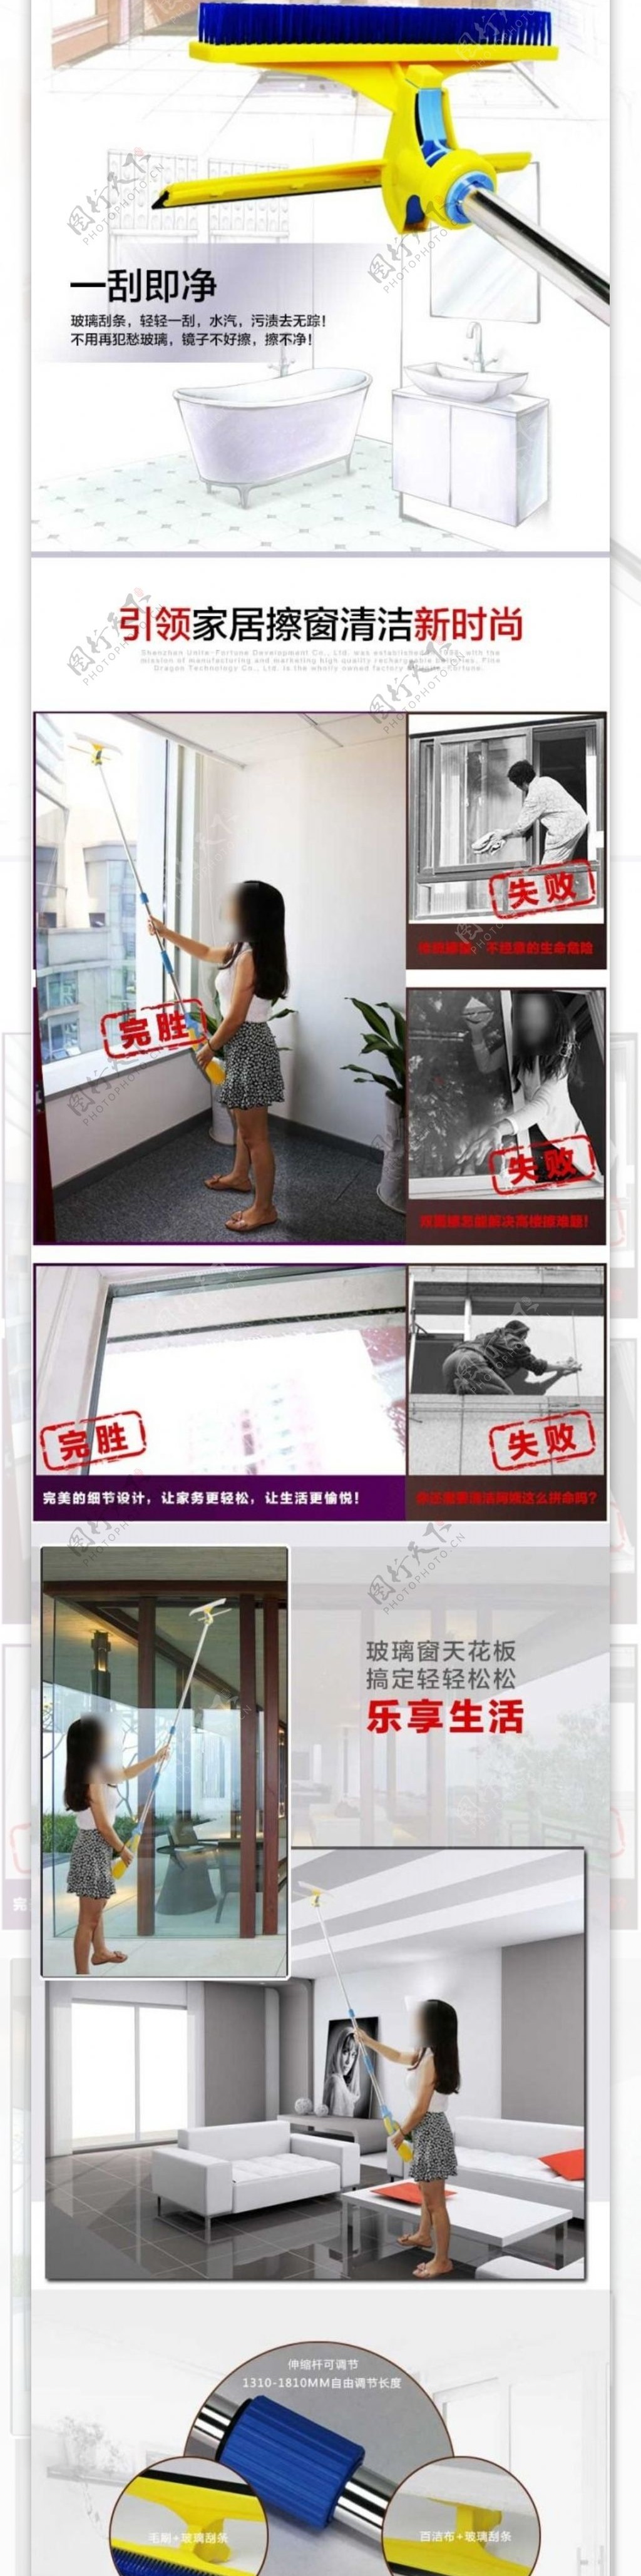 自动擦窗器详情广告图模板玻璃清洗器